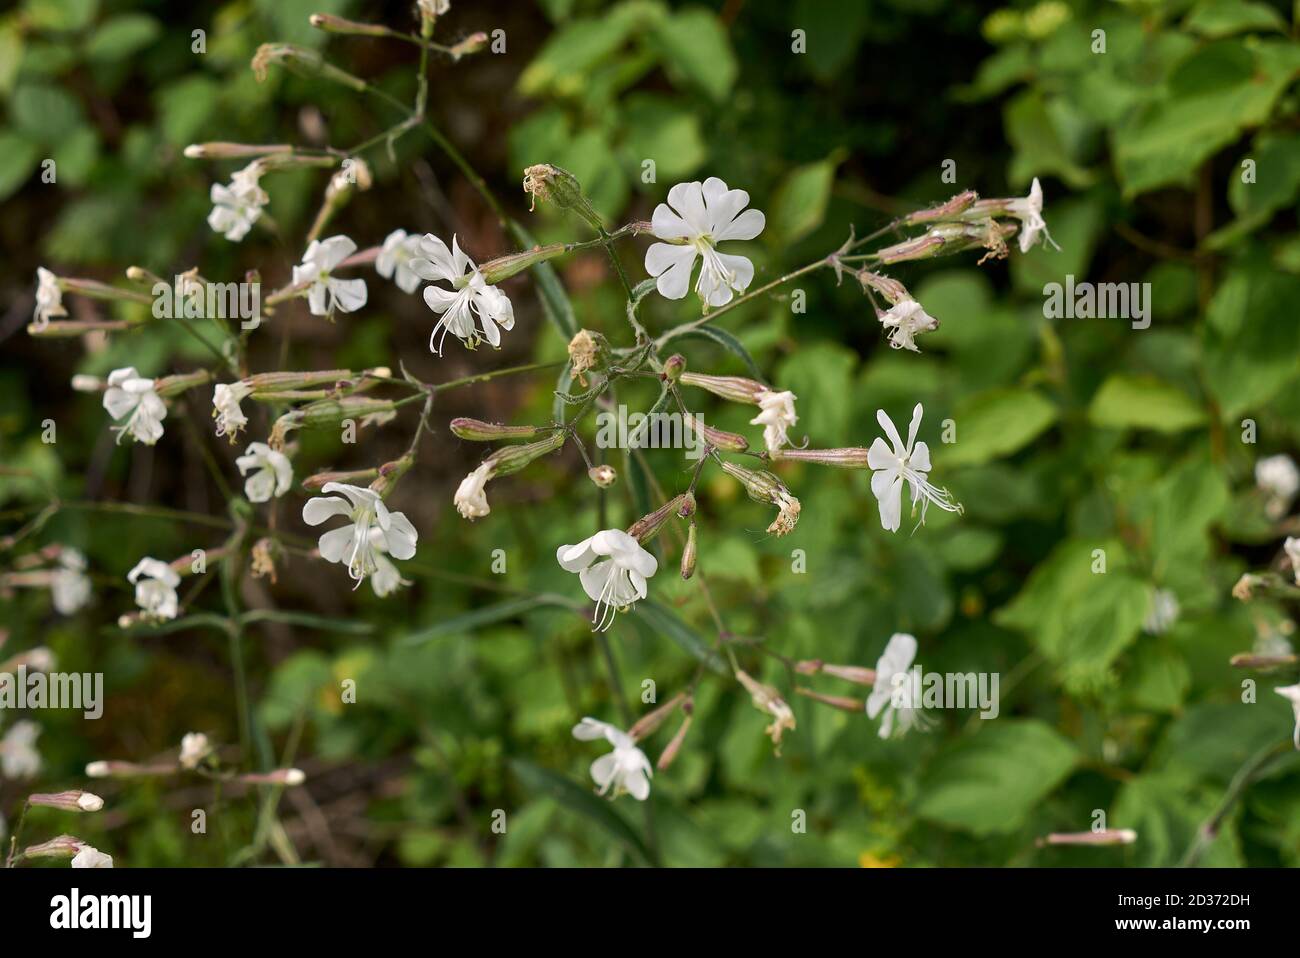 Silene italica plants in bloom Stock Photo